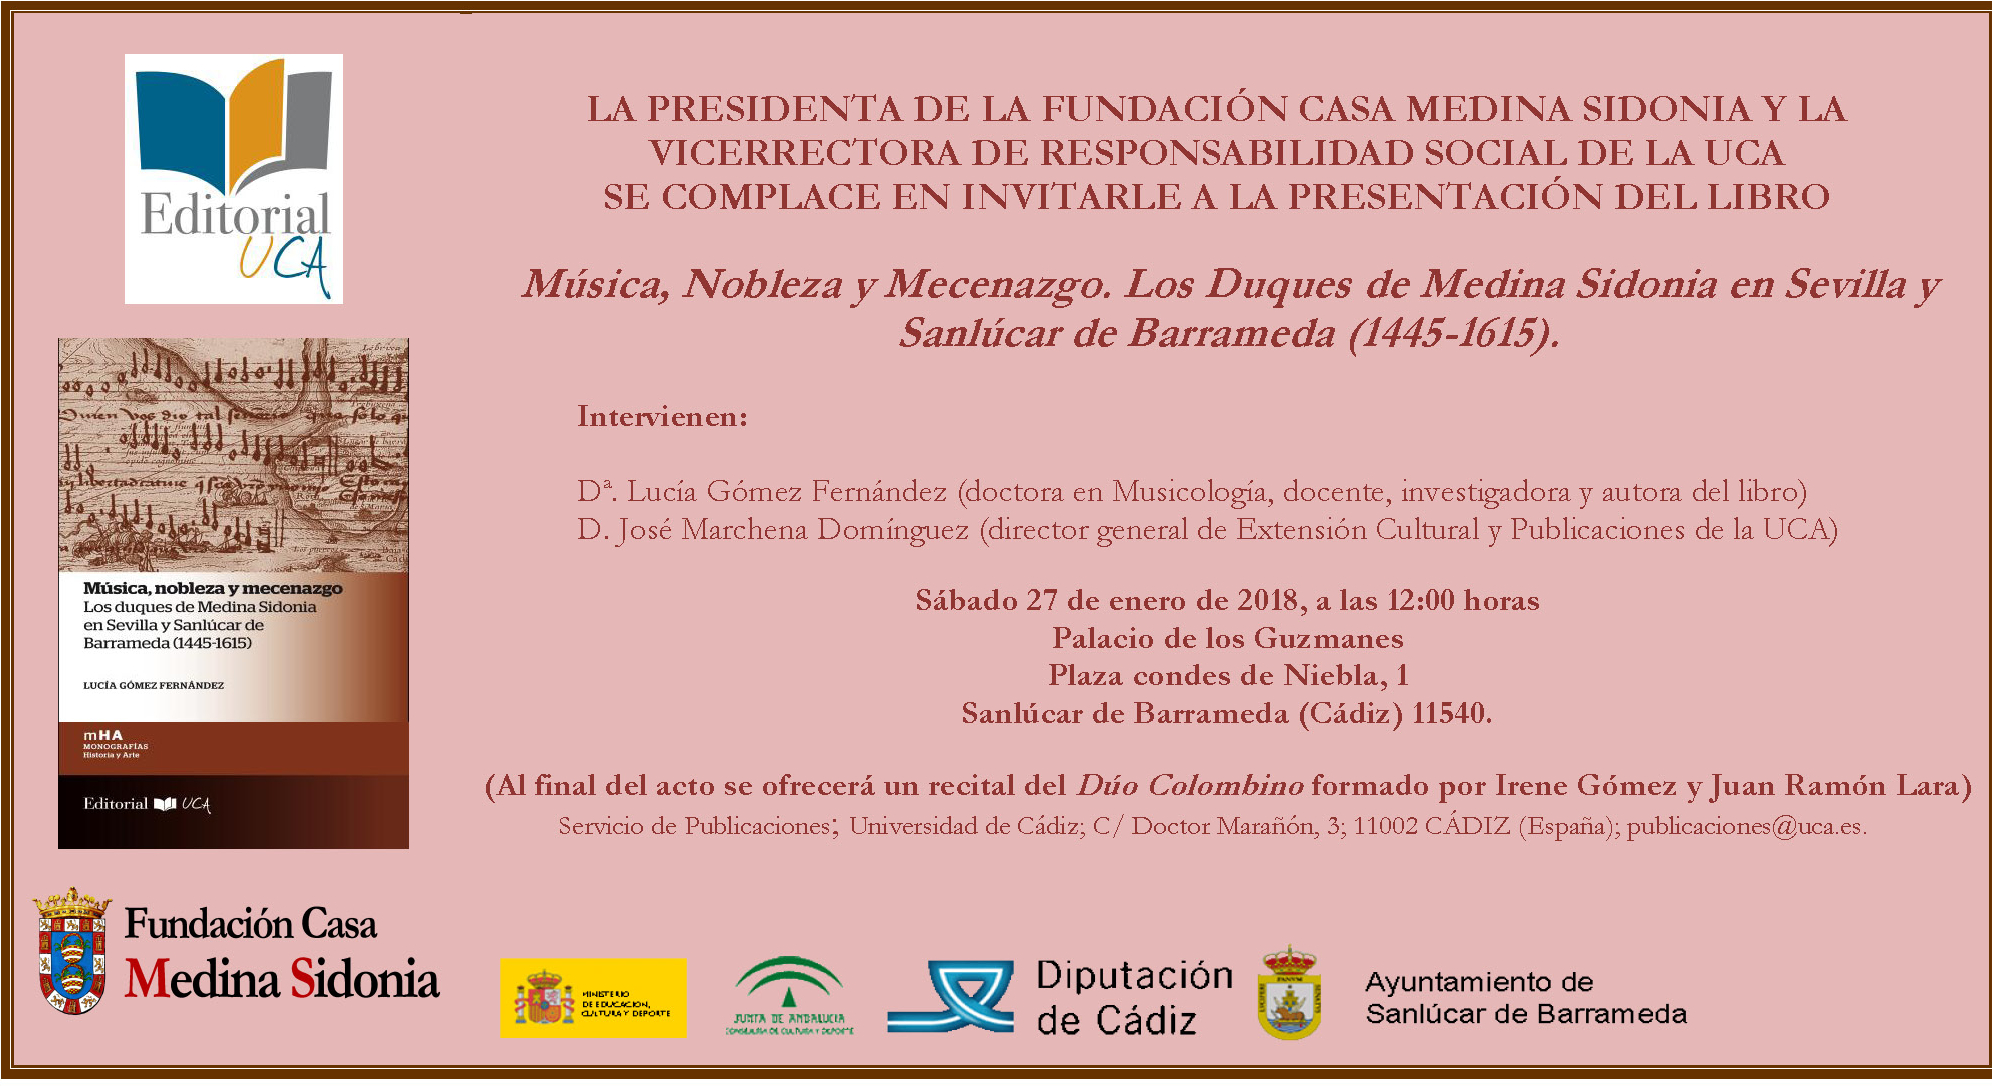 Presentación en Sanlúcar de Barrameda de un nuevo libro de la colección “Monografías Historia y Arte” del Sello Editorial UCA